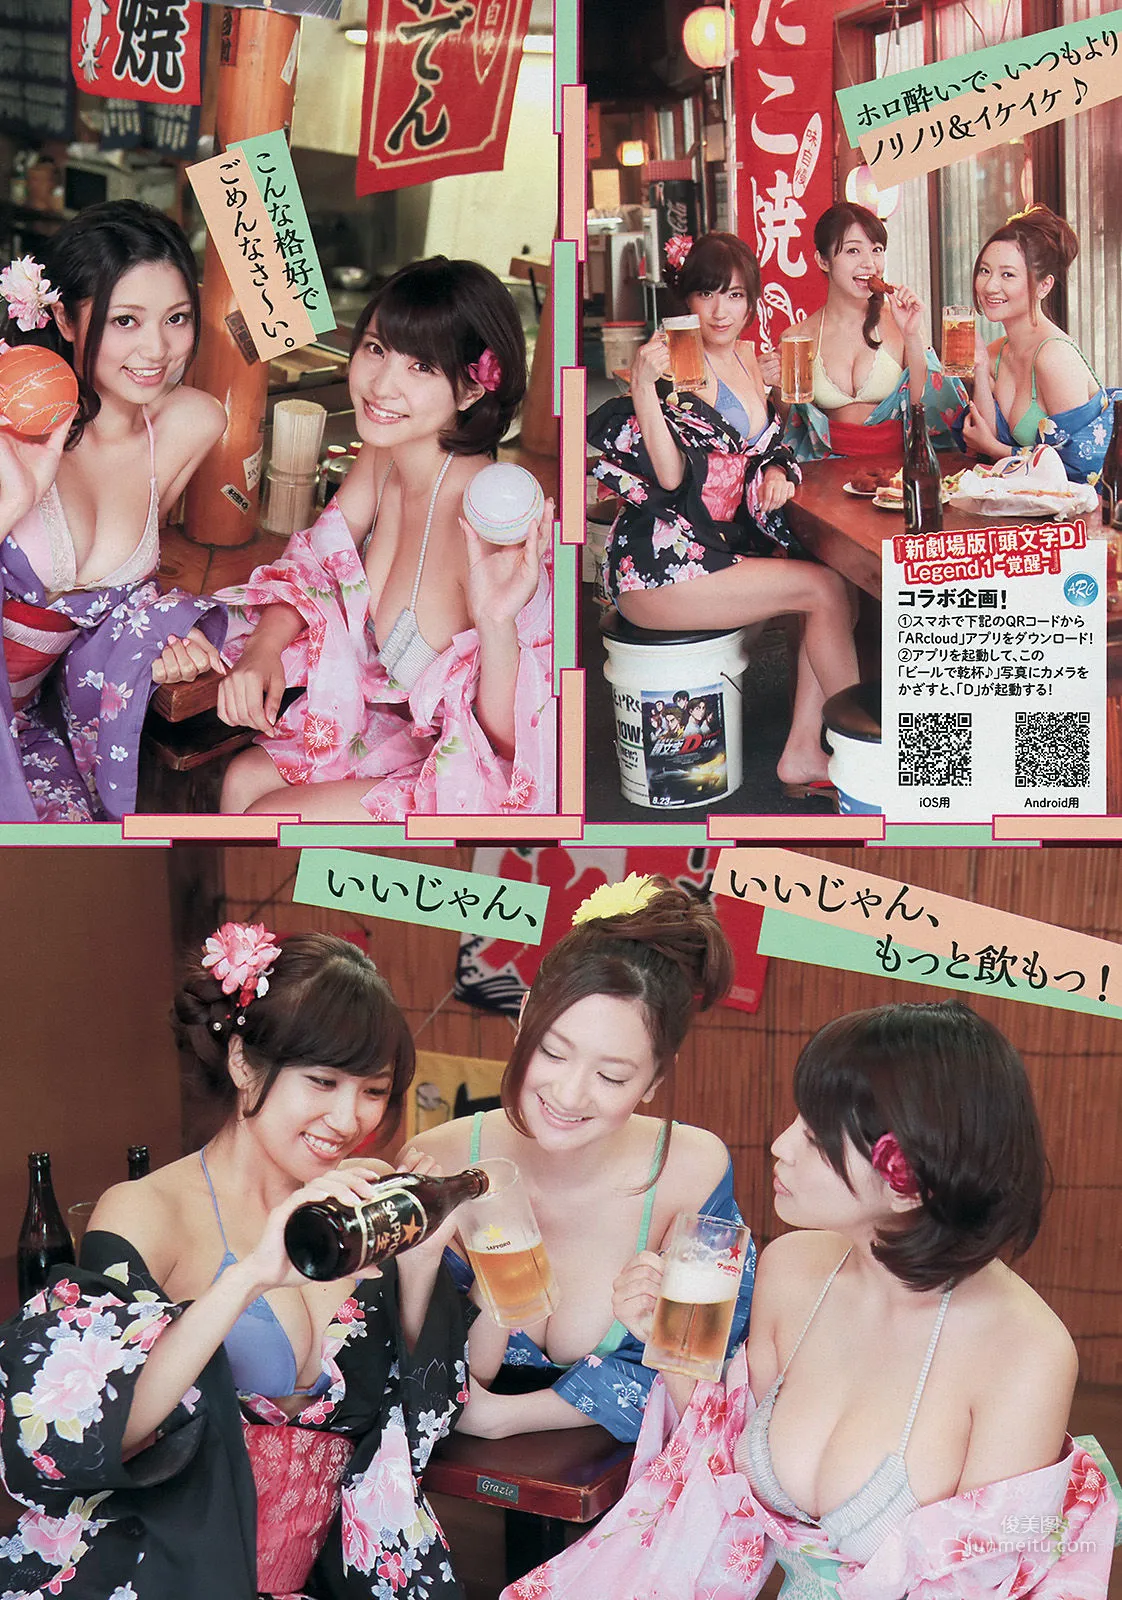 [Young Magazine] 中村静香 さいとうまりな 2014年No.36-37 写真杂志7